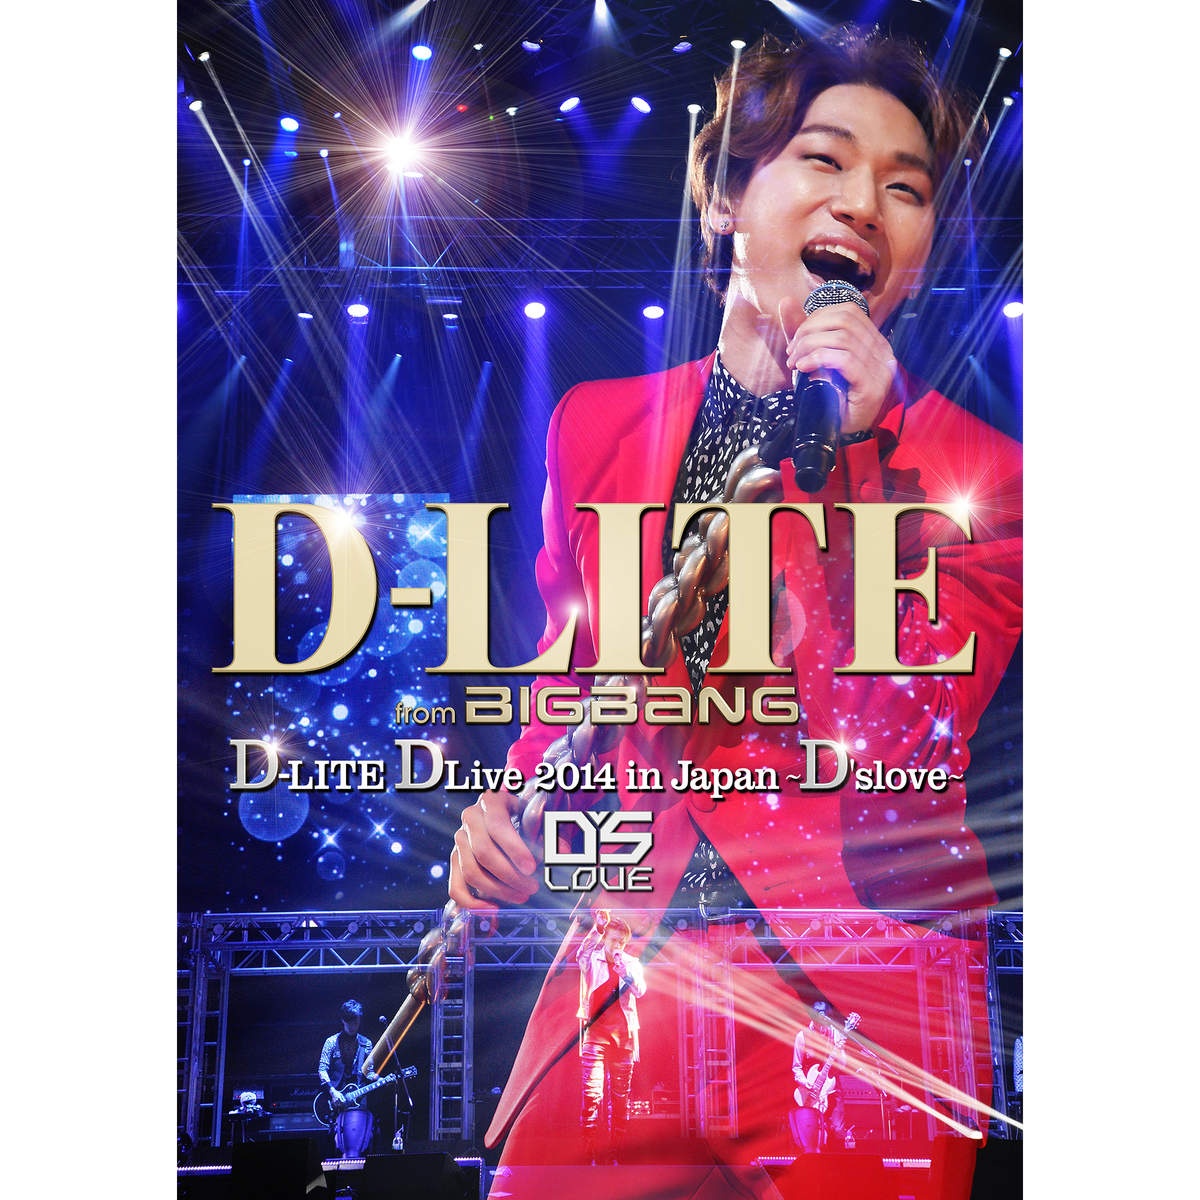 DLITE DLive 2014 in Japan D' slove